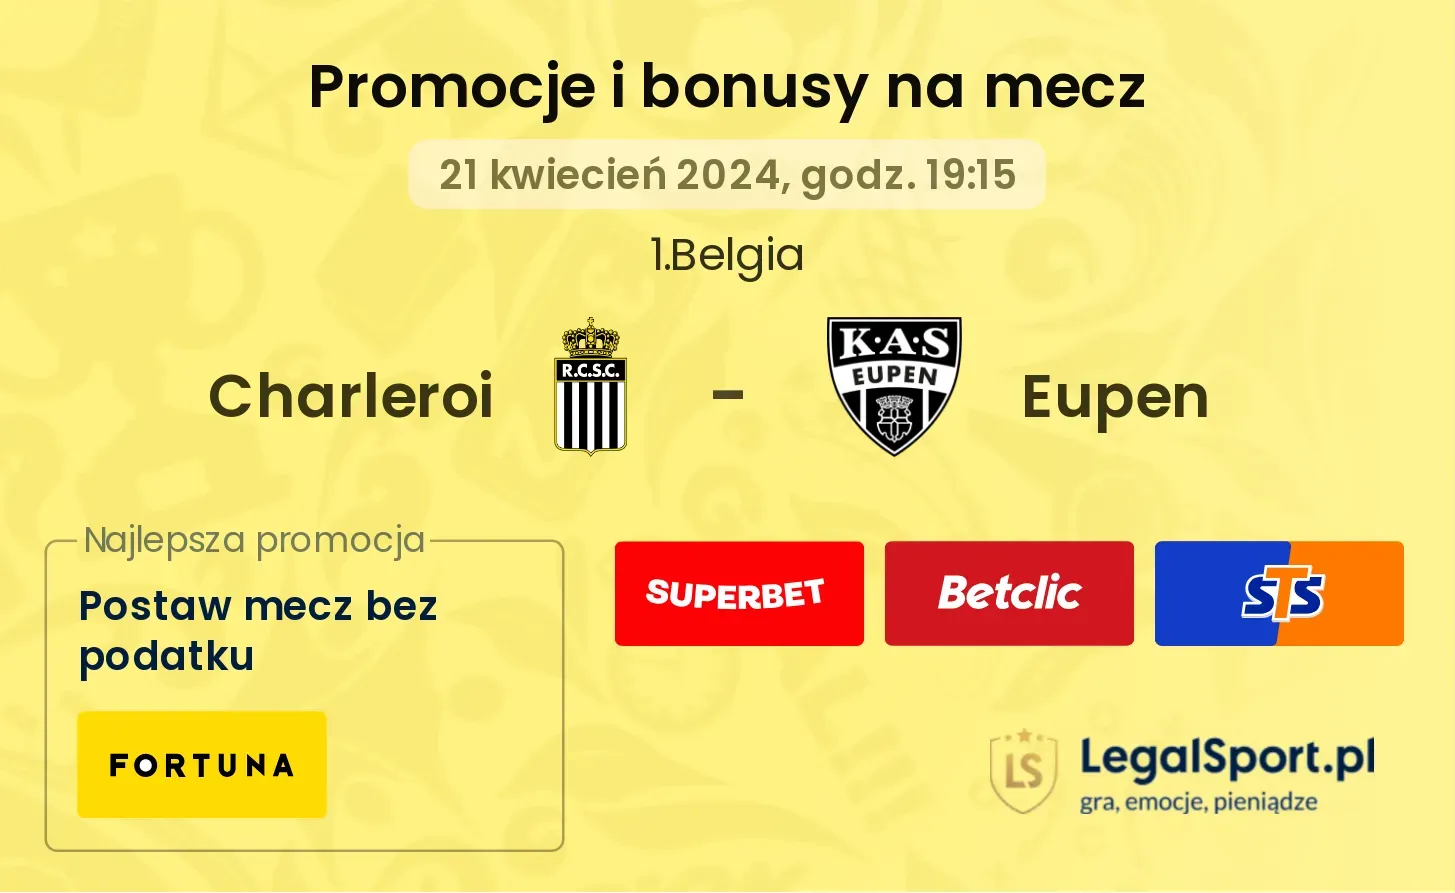 Charleroi - Eupen promocje bonusy na mecz